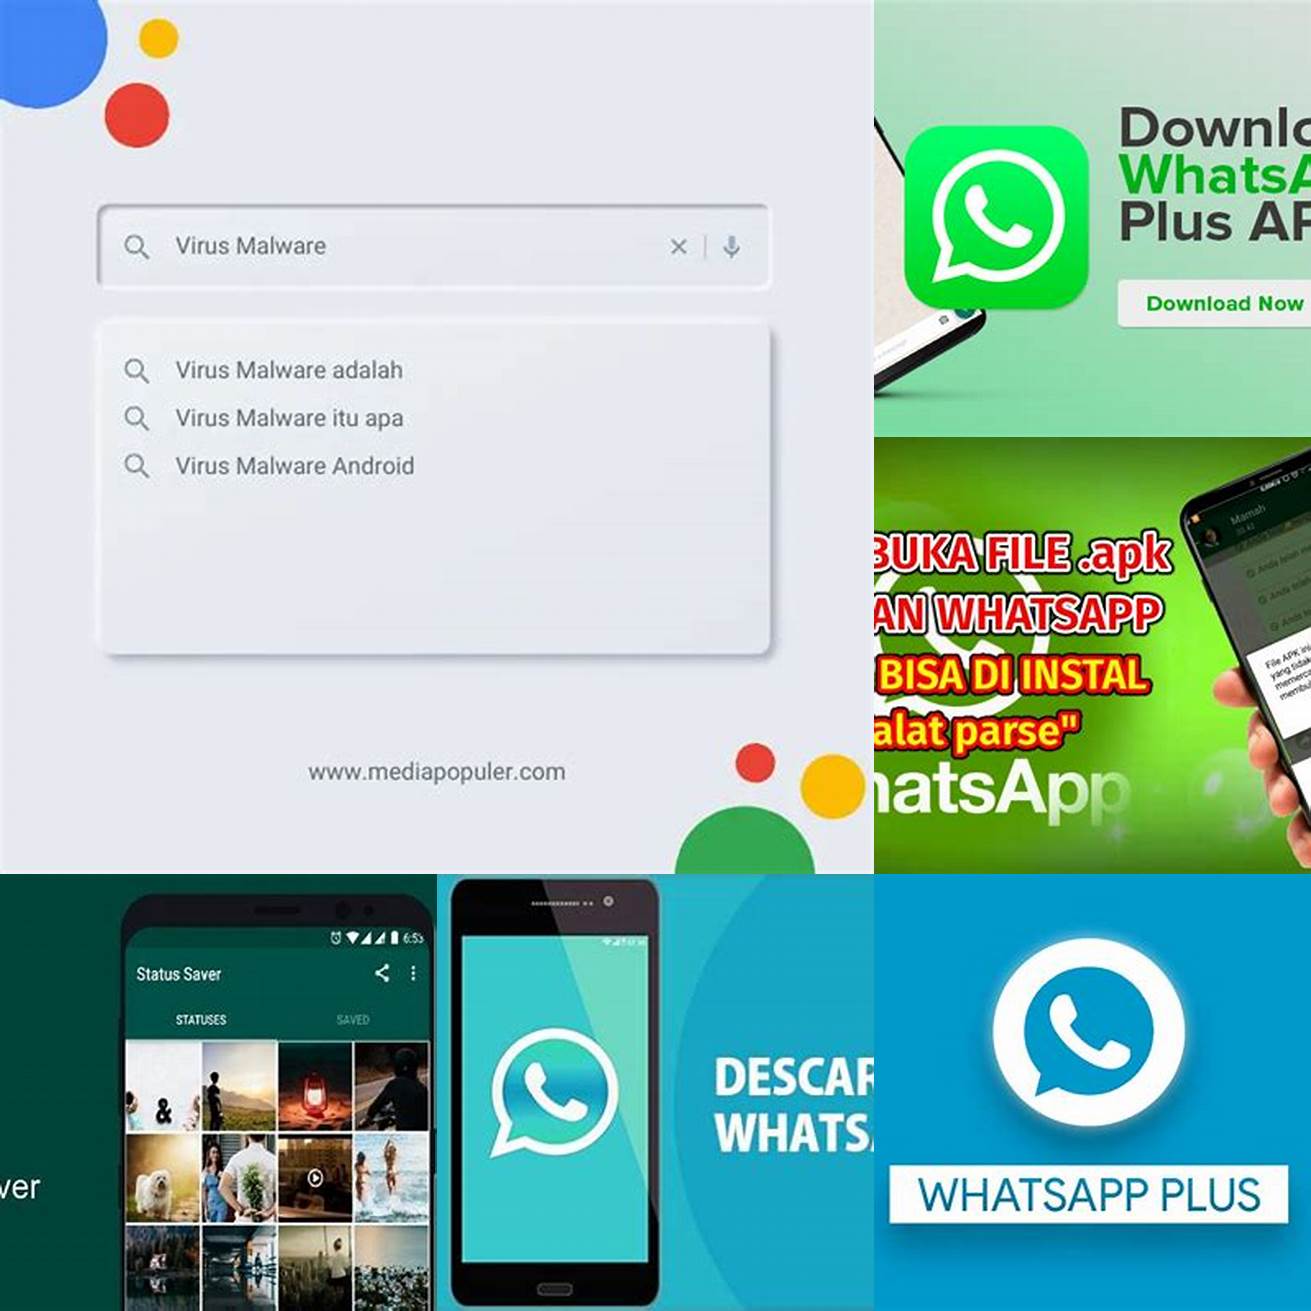 Kunjungi situs web yang terpercaya untuk mengunduh file APK WhatsApp Plus